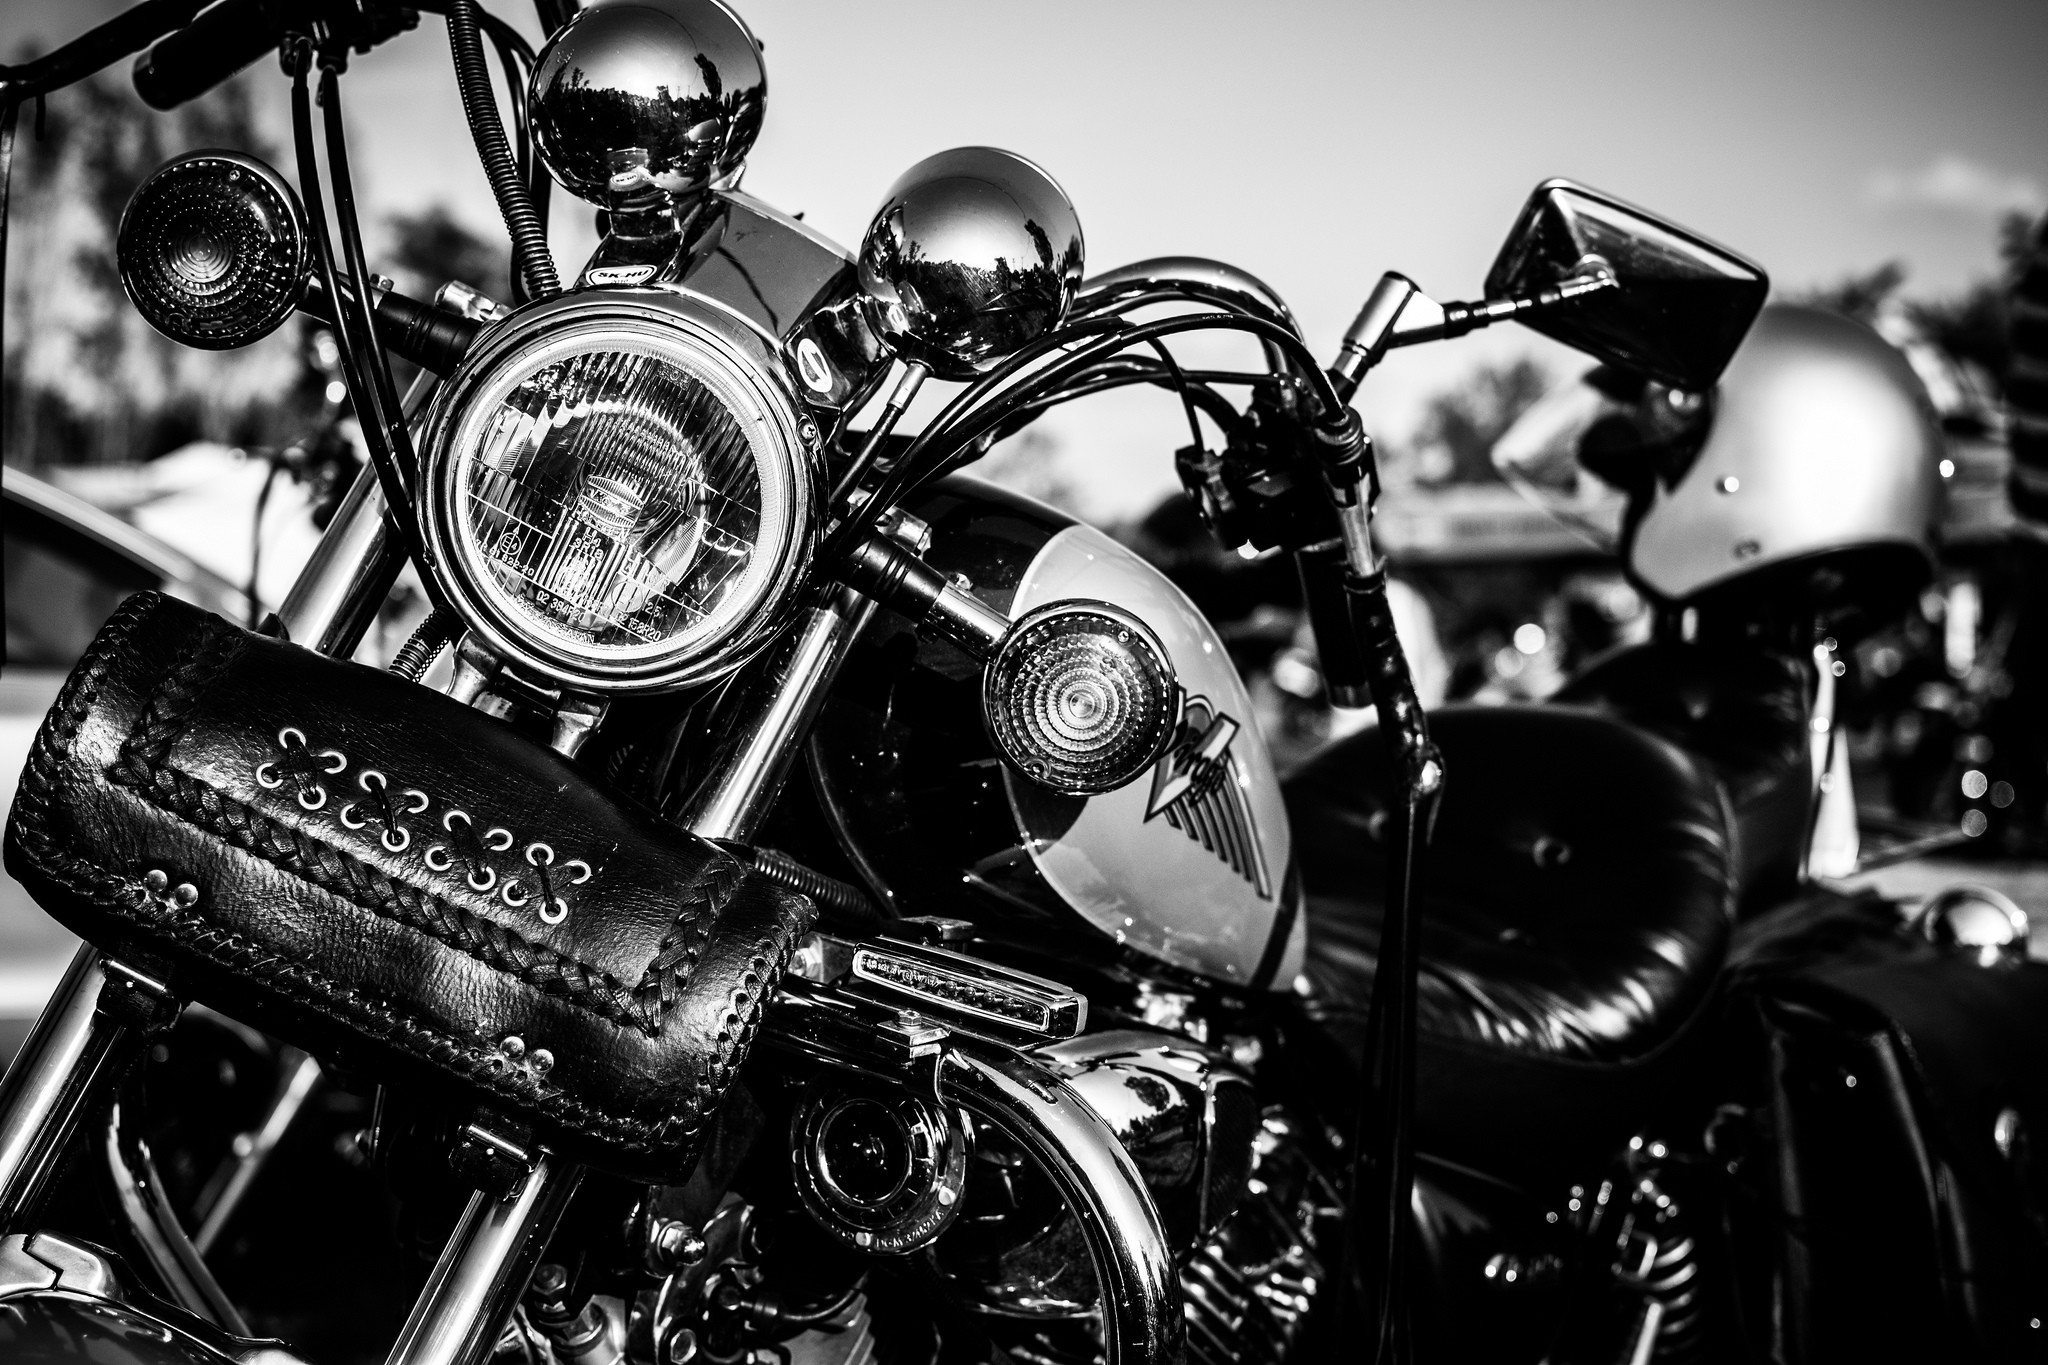 2048x1365 Harley Davidson Images